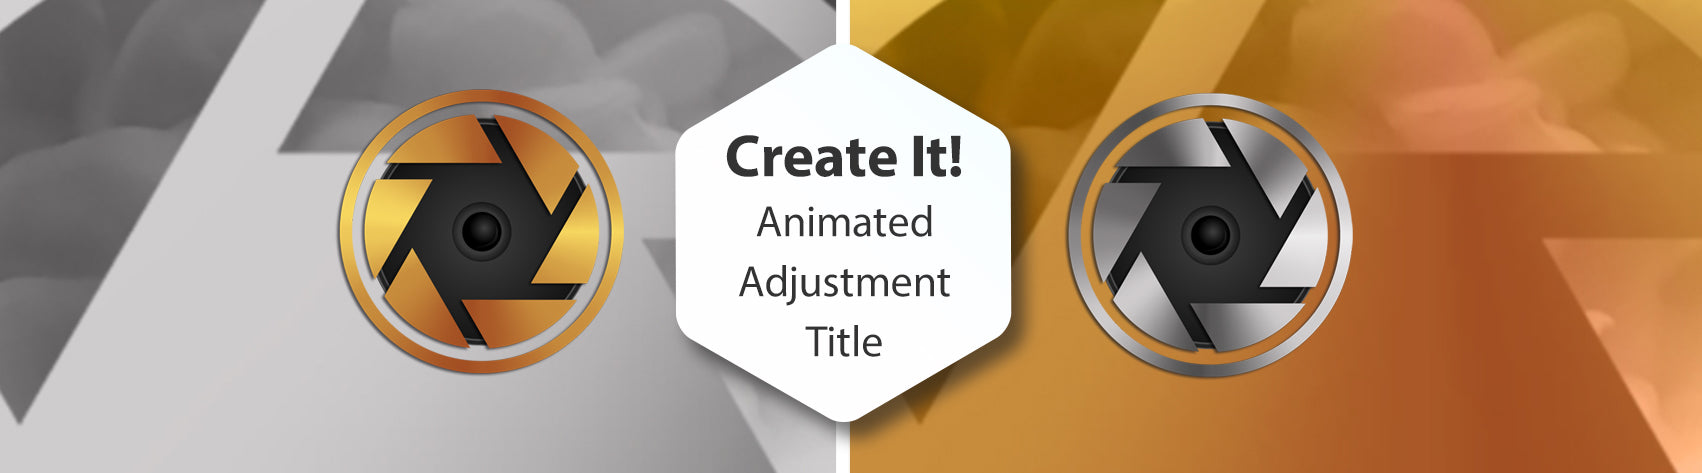 Create It! Animated Adjustment Title